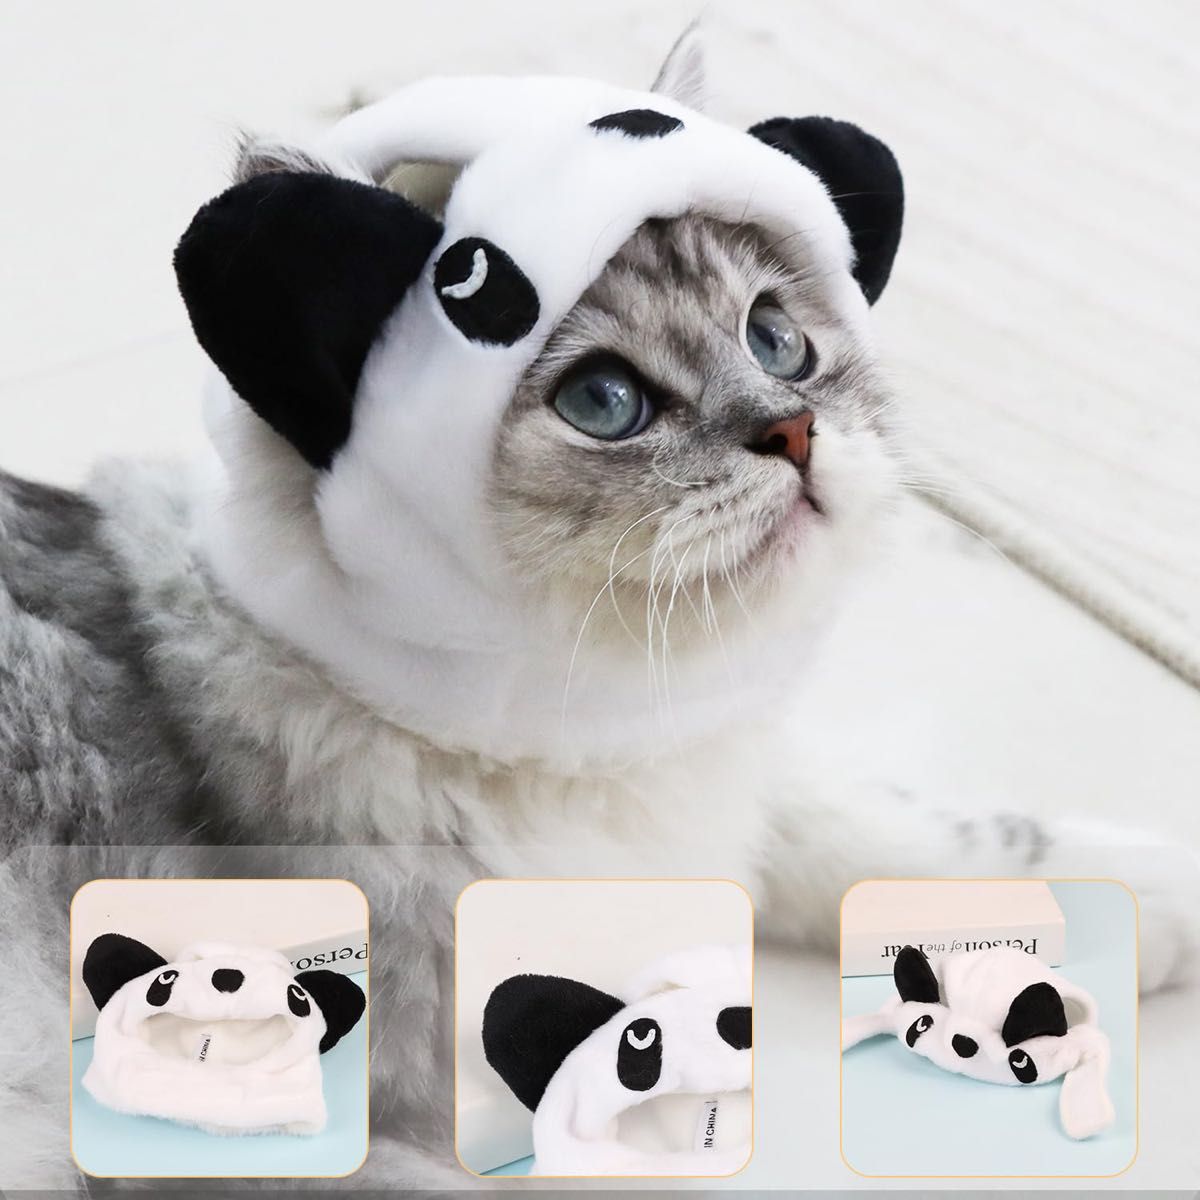 CINECE 猫服 コスプレ パンダ 被り物 ペット服 かぶりもの 帽子 コスチューム 子犬服 可愛い 白 写真 パンダに大変身 